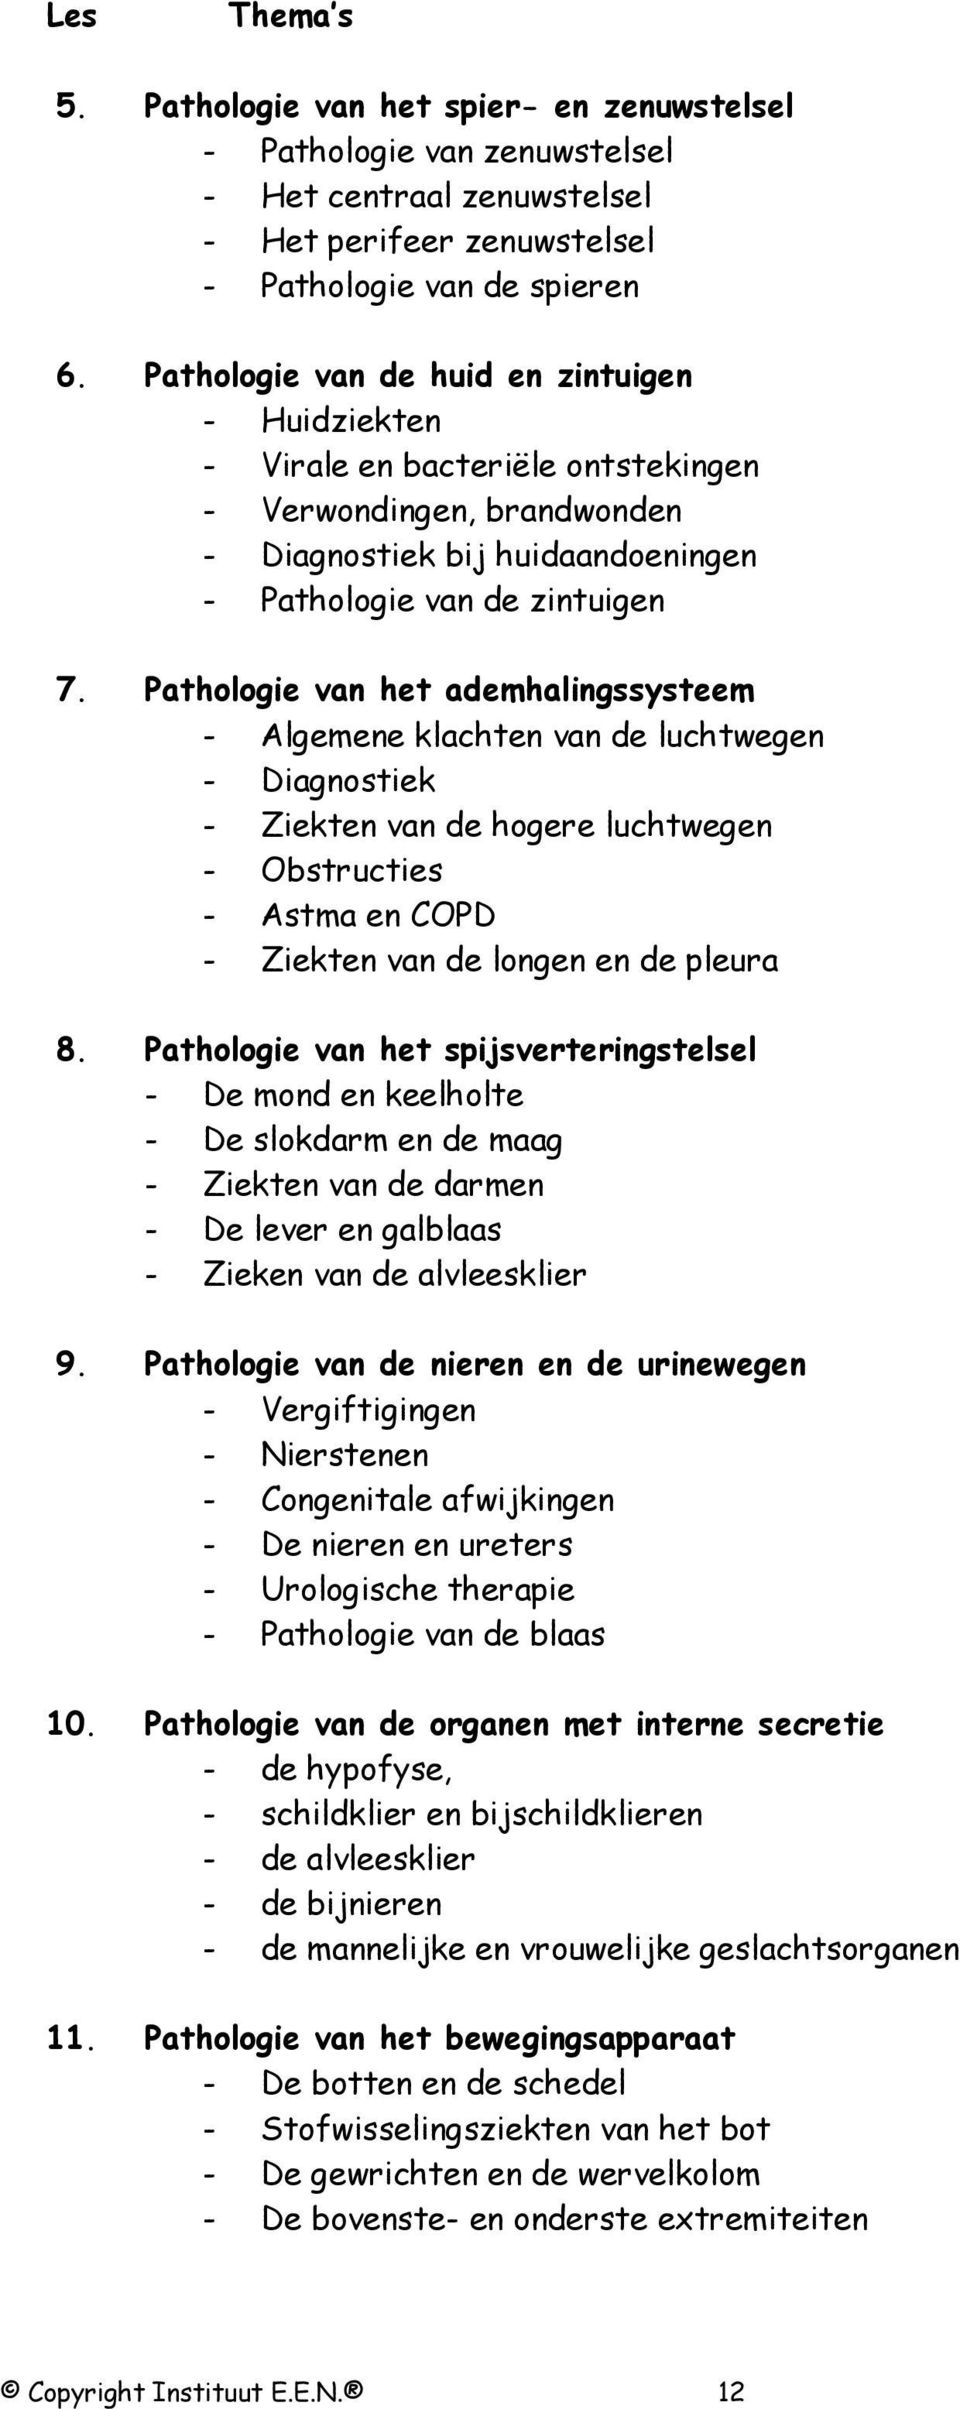 Pathologie van het ademhalingssysteem - Algemene klachten van de luchtwegen - Diagnostiek - Ziekten van de hogere luchtwegen - Obstructies - Astma en COPD - Ziekten van de longen en de pleura 8.